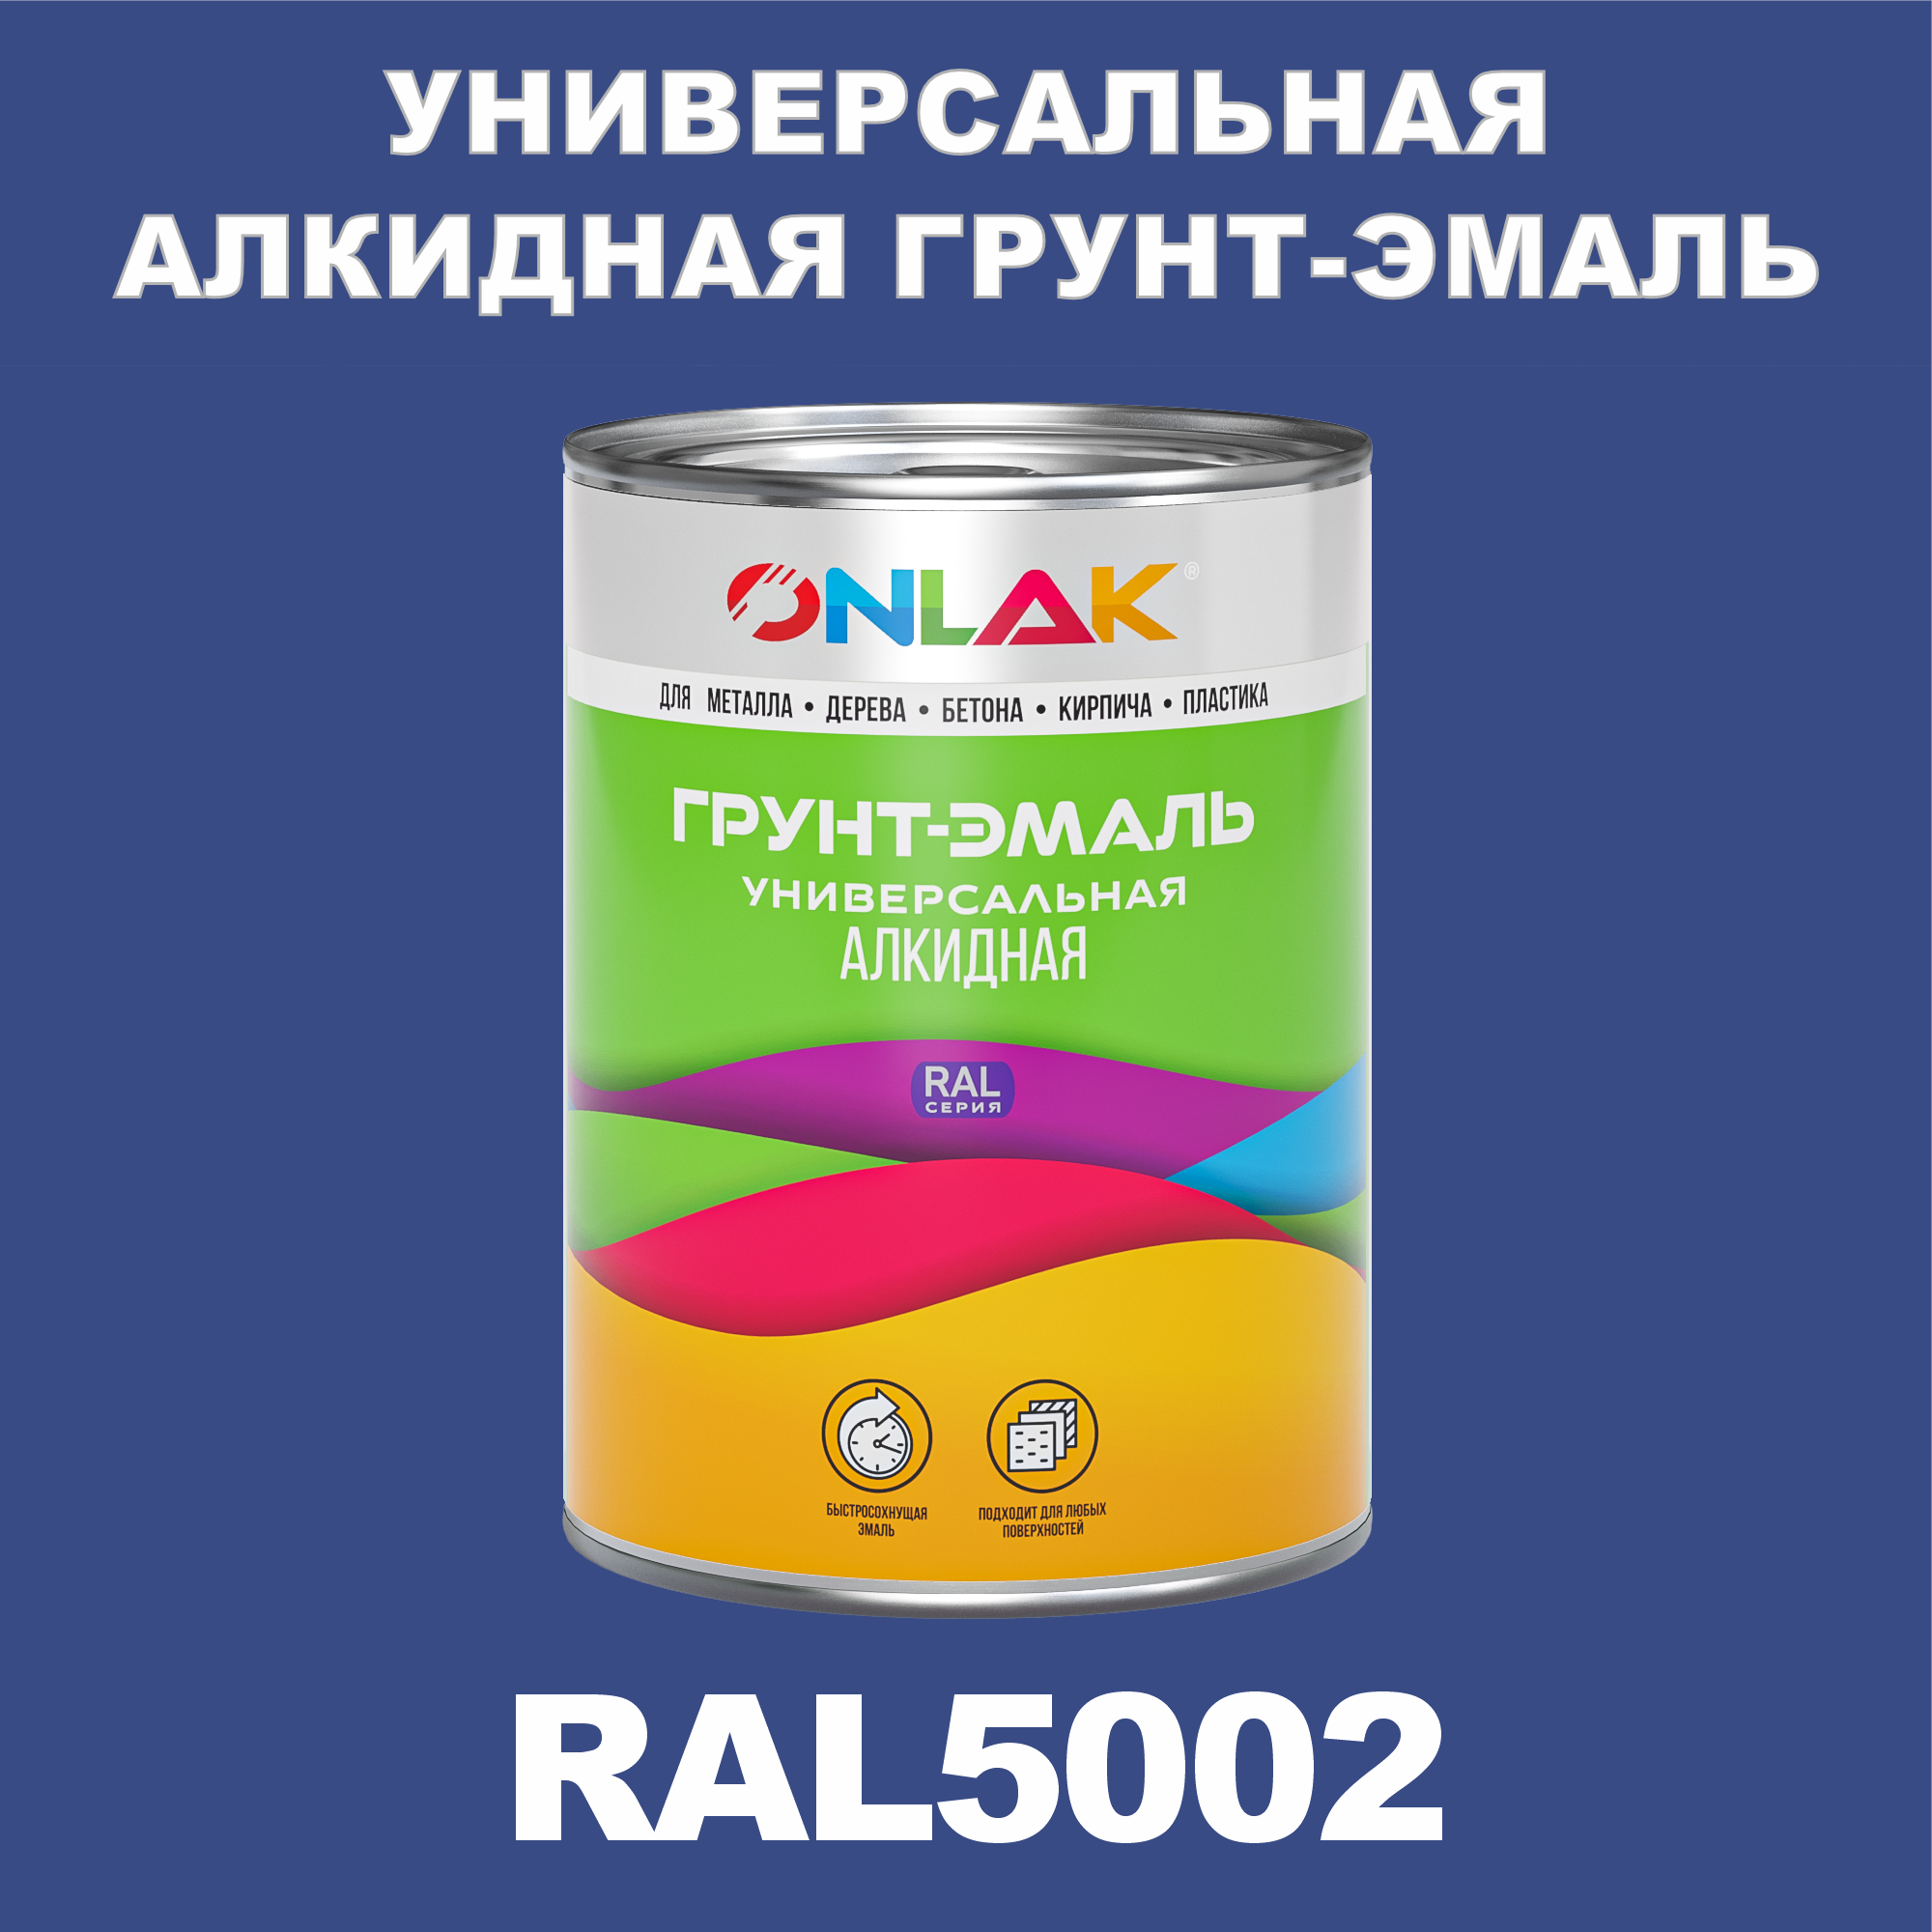 Грунт-эмаль ONLAK 1К RAL5002 антикоррозионная алкидная по металлу по ржавчине 1 кг грунт эмаль вит по ржавчине алкидная темно серая 2 6 кг